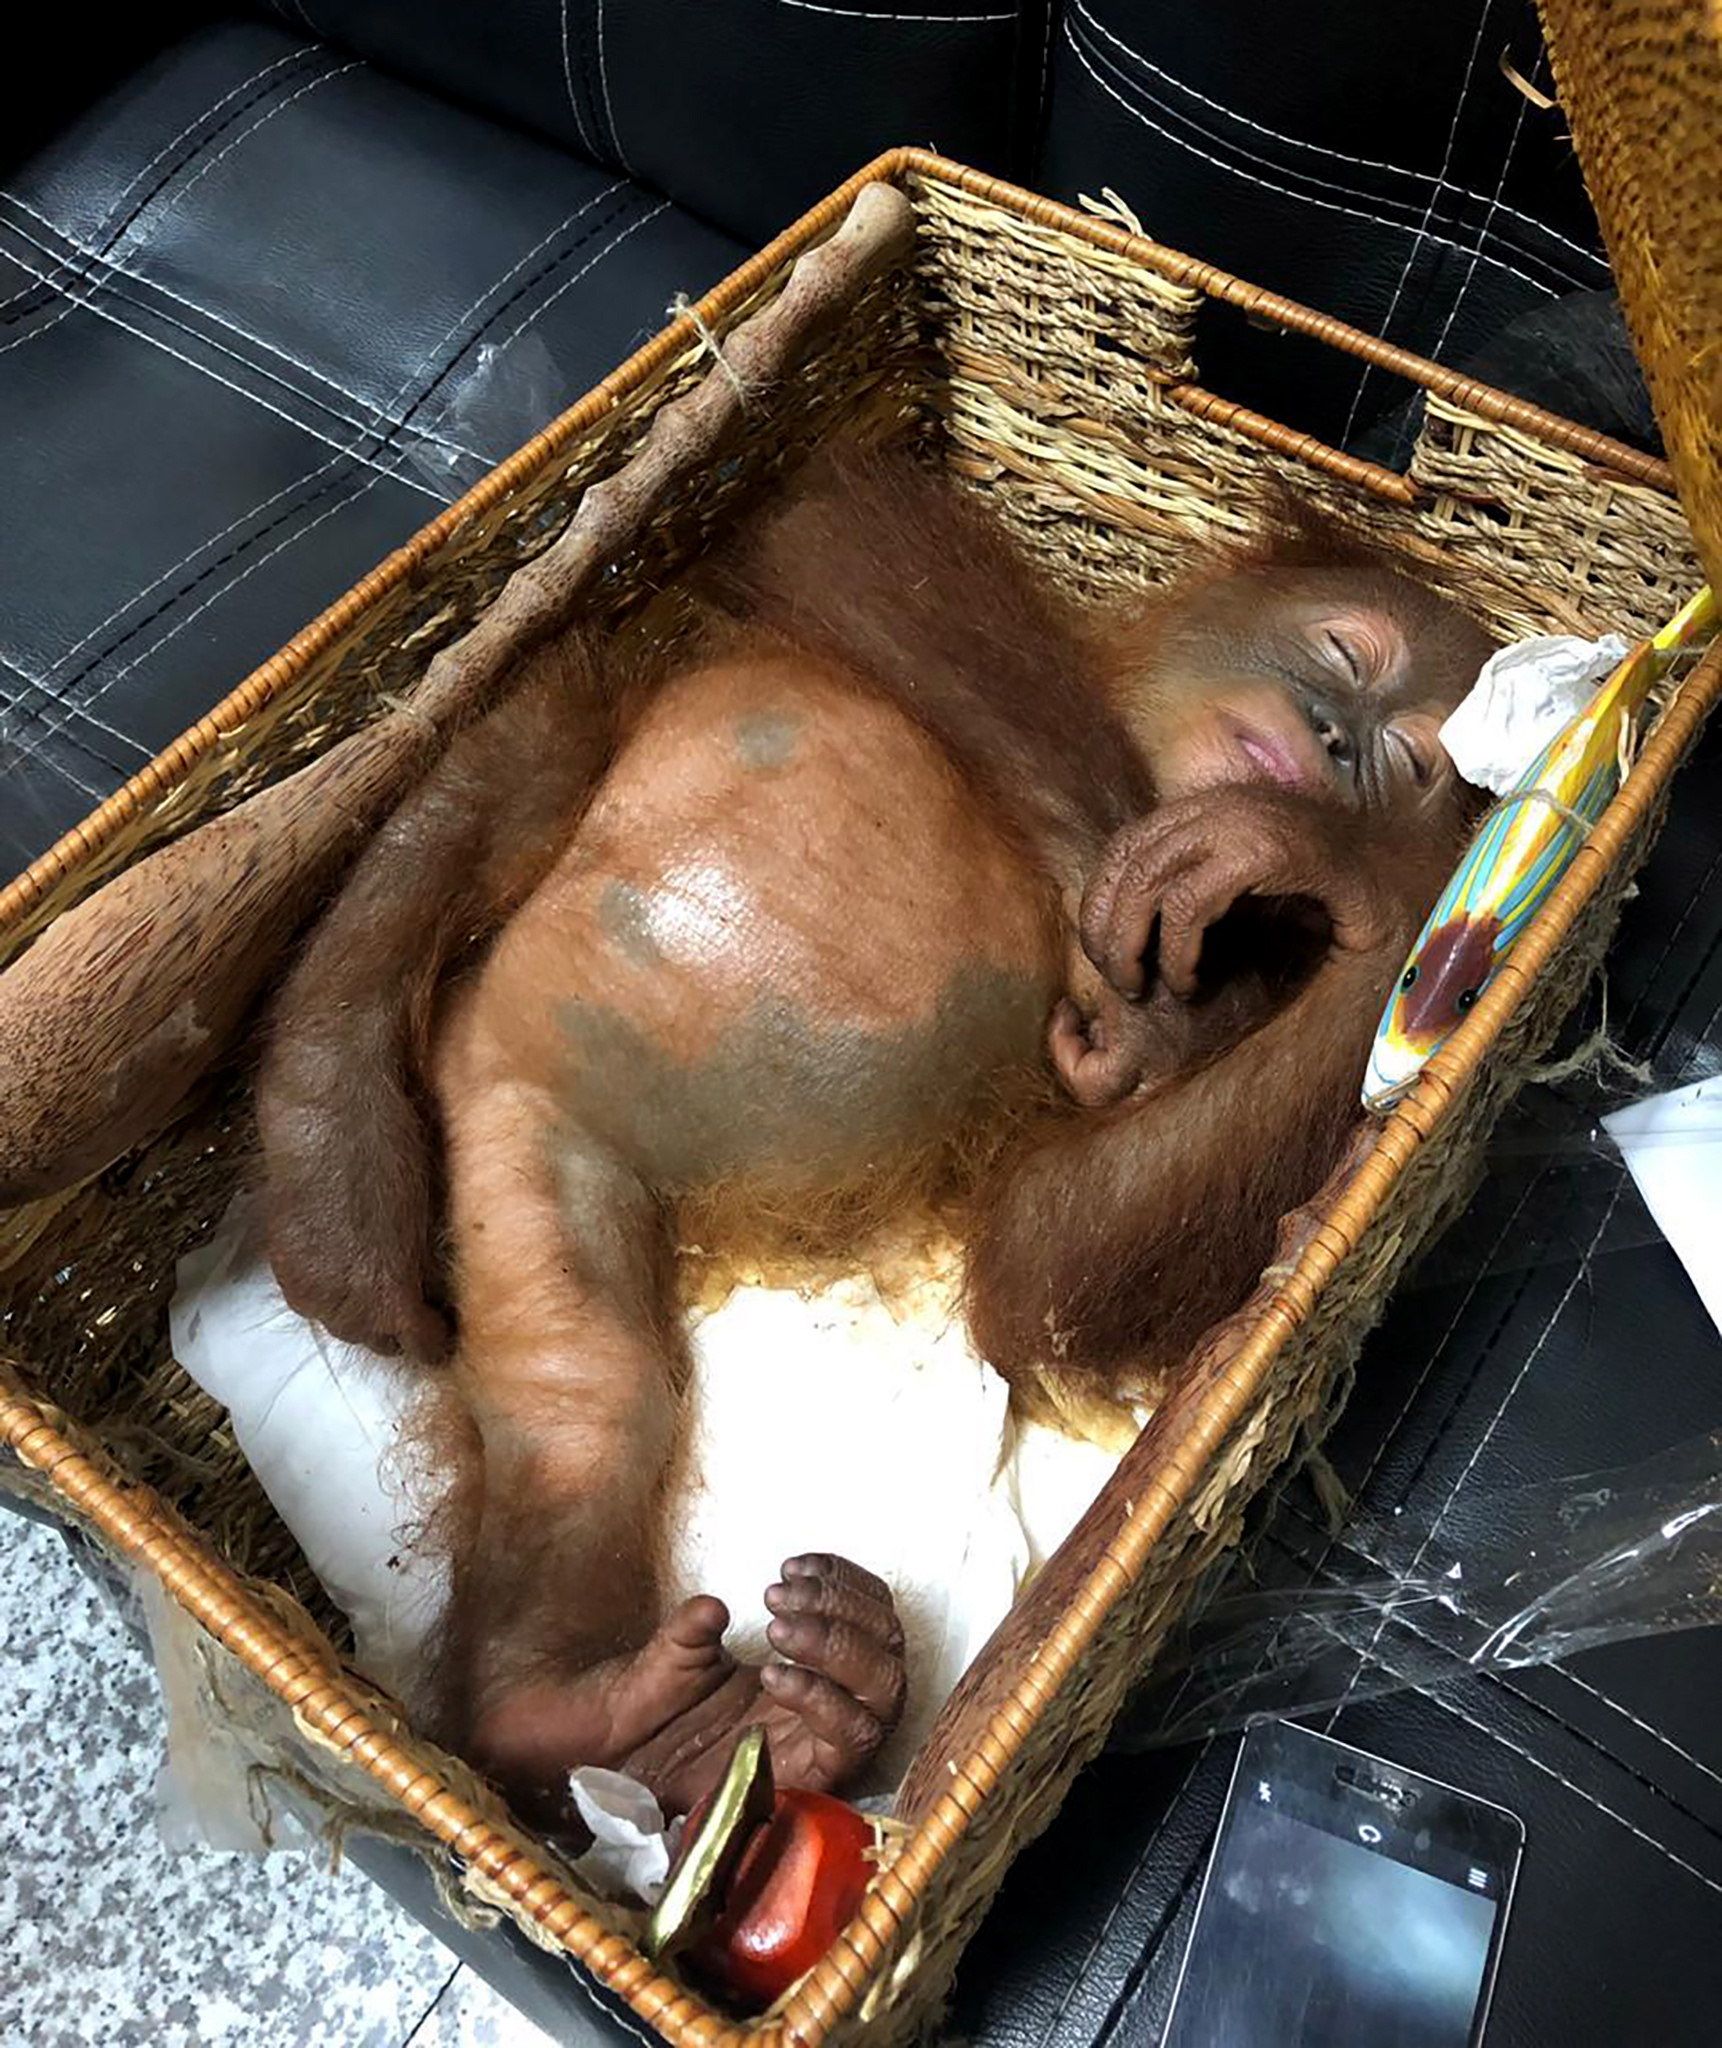 Foto: El orangután estaba sedado en una canasta de ratán, 24 marzo 2019